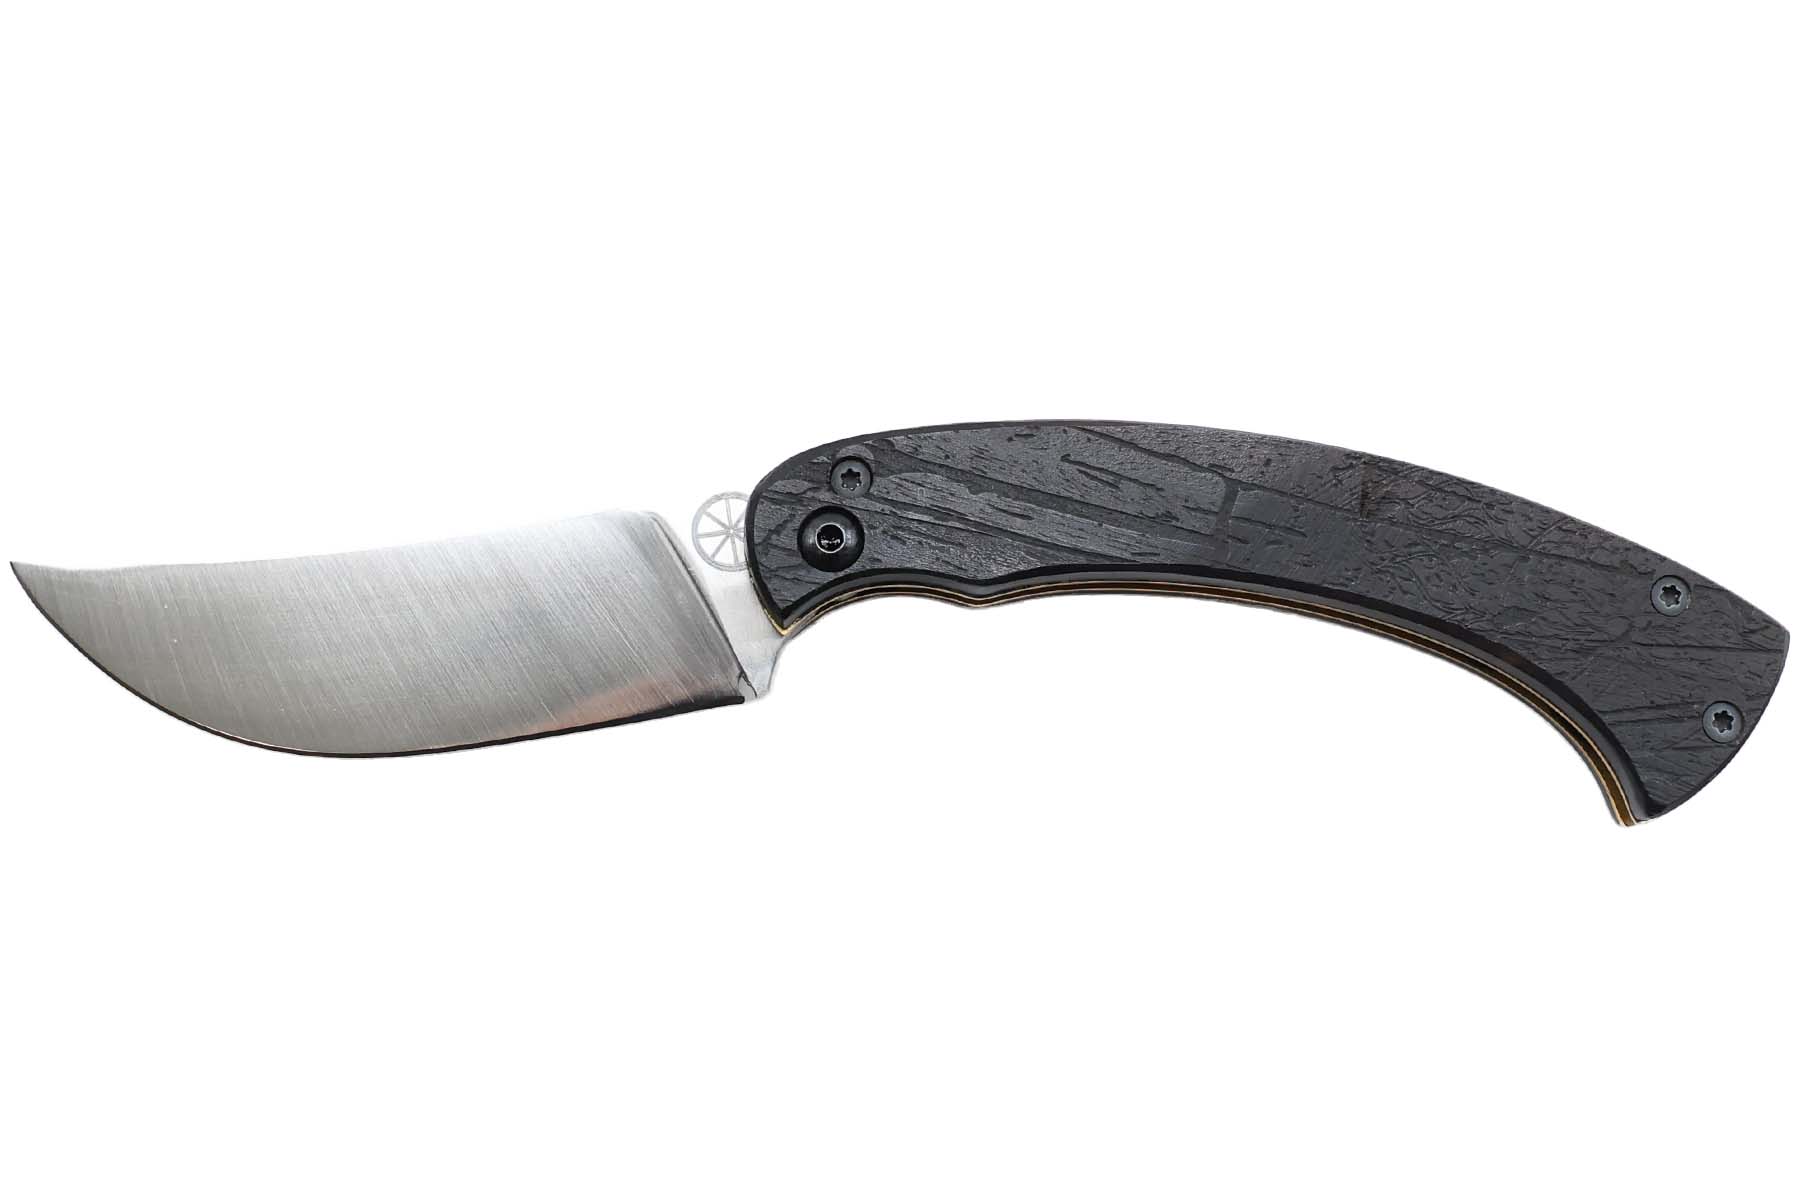 Couteau pliant piémontais par Animus Knives modèle "Ether" - ébène